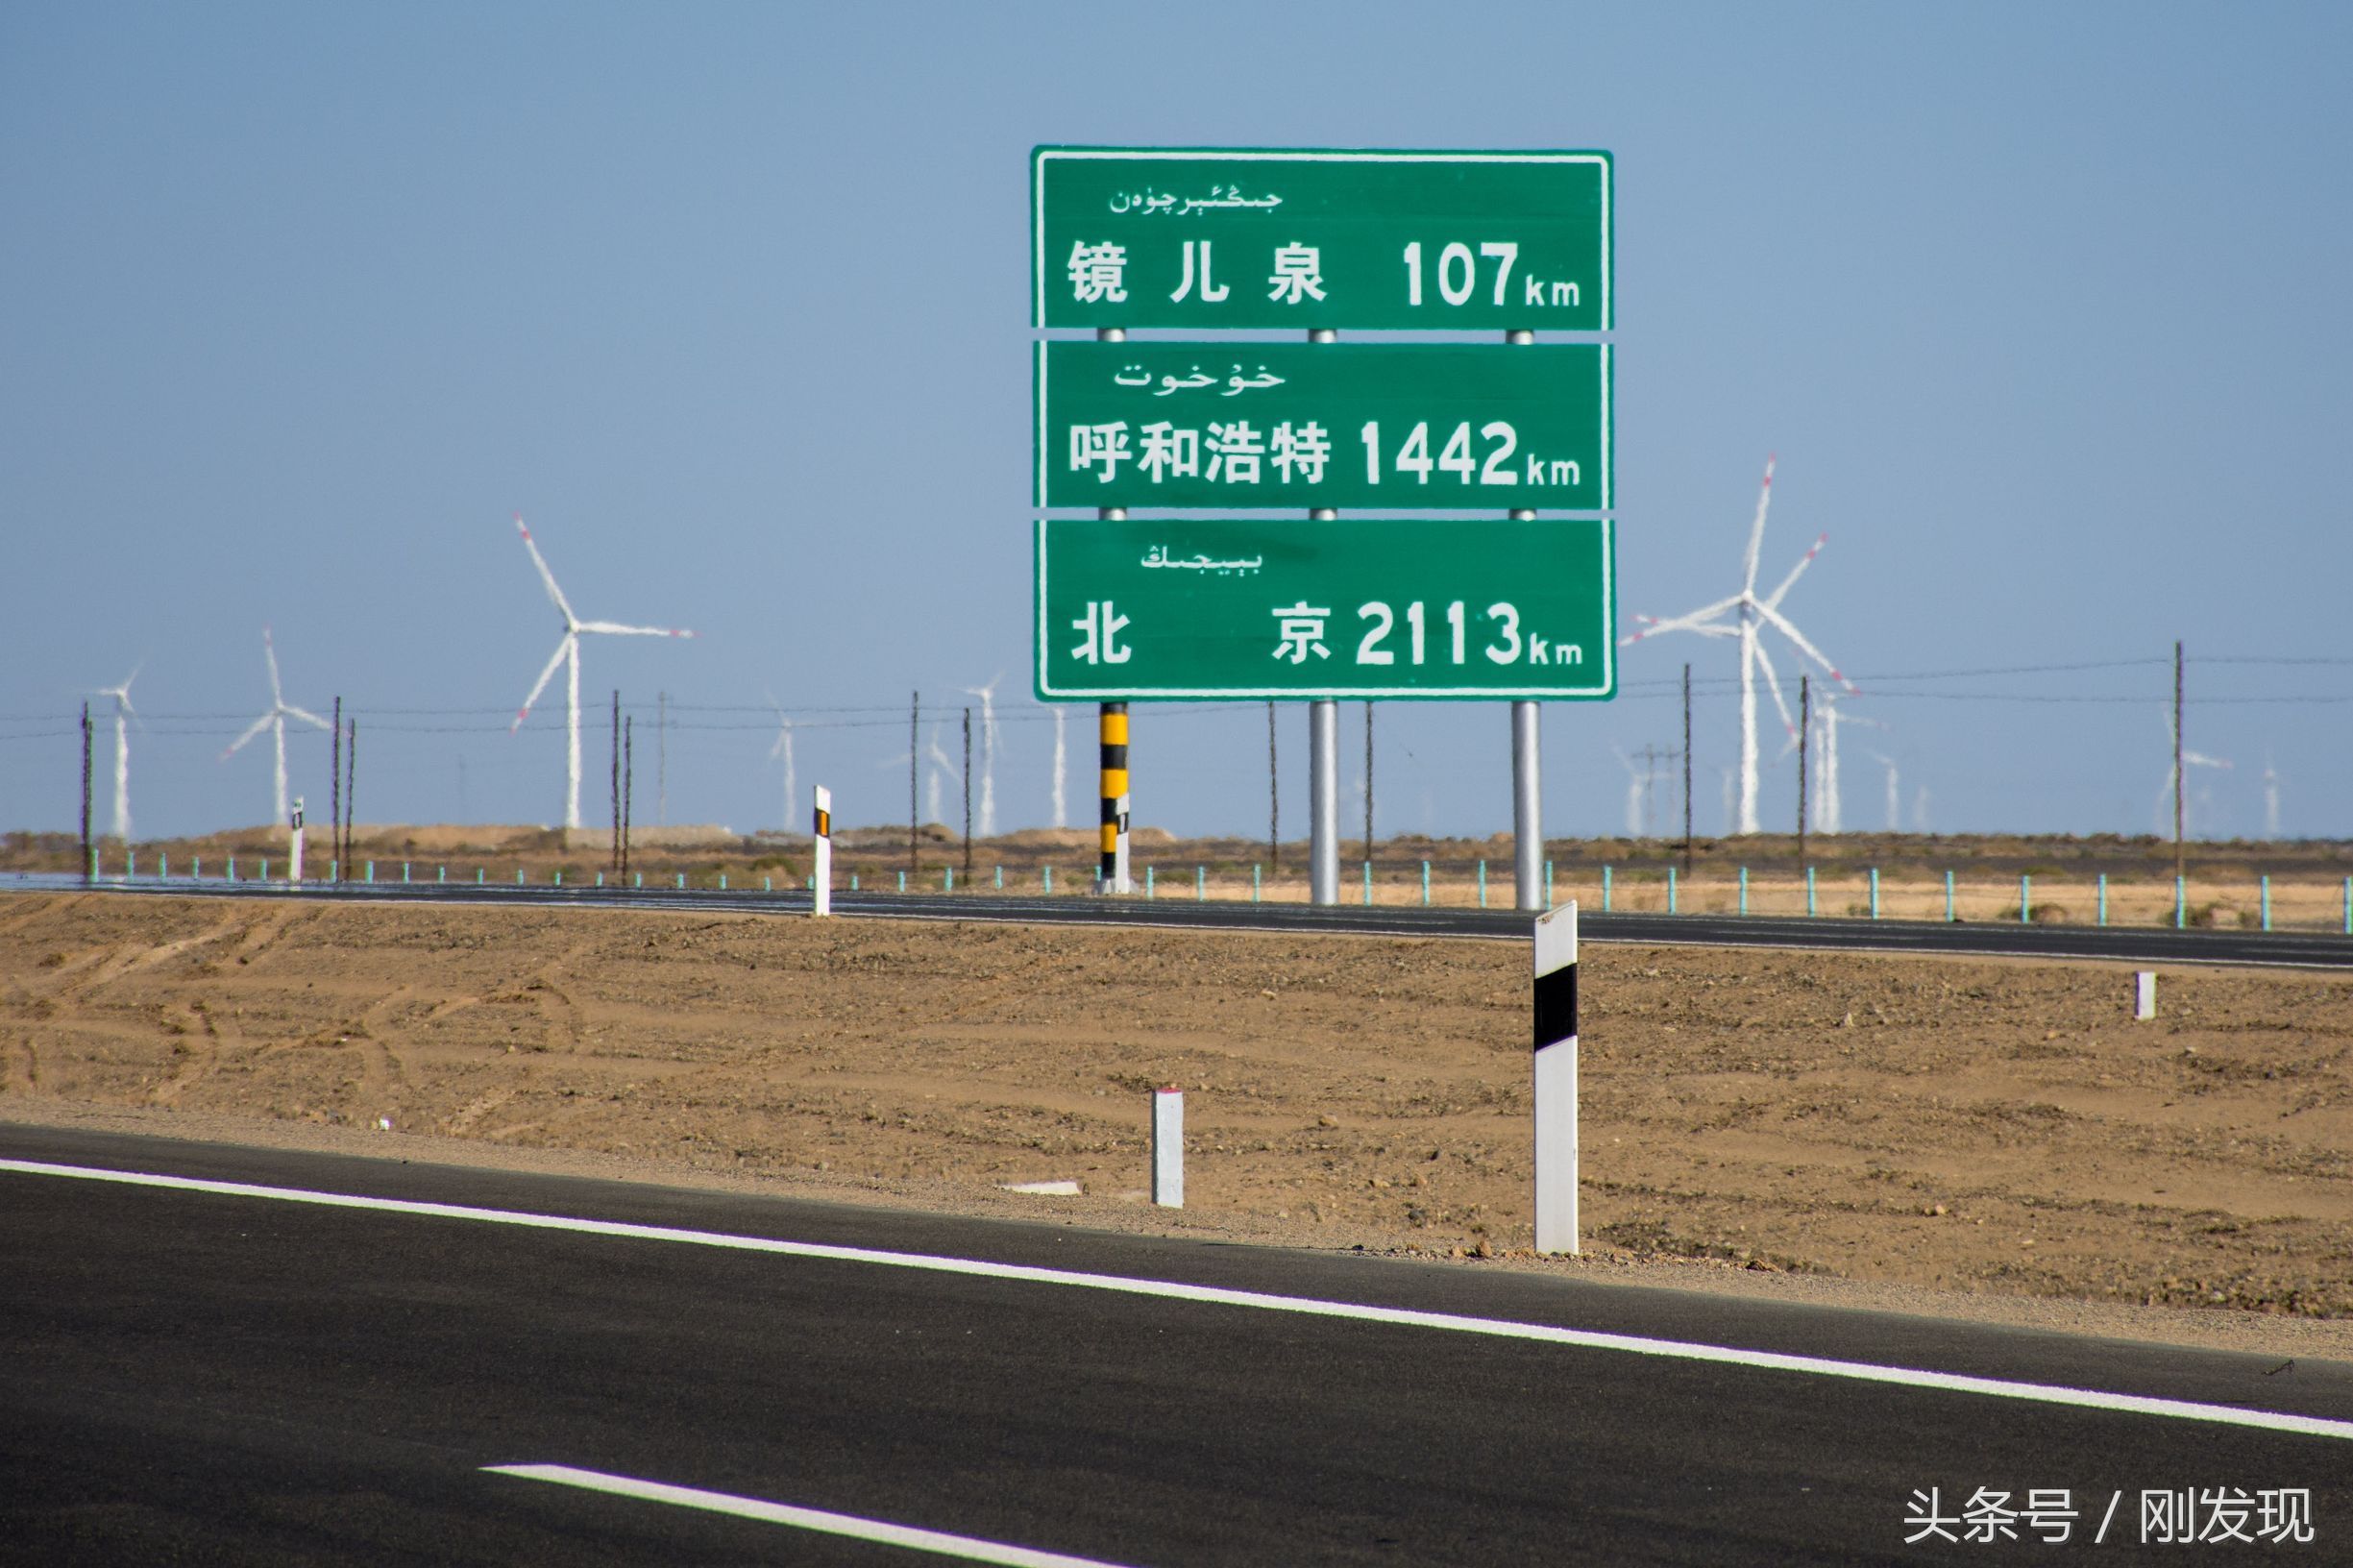 500公里京新高速无人区,诸多路标清晰明了,穿越车辆有